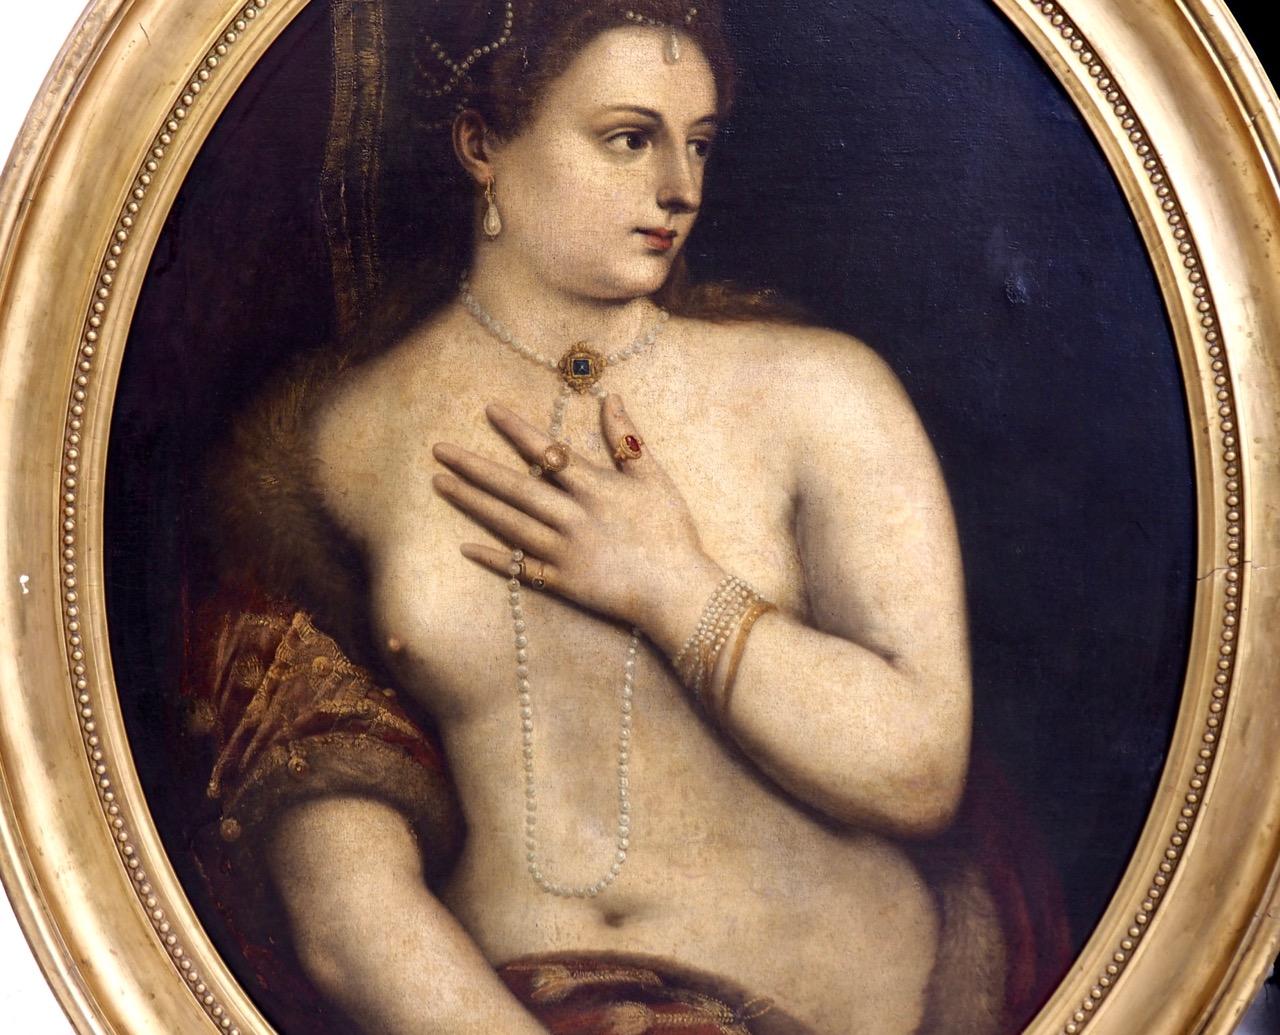 Fantastisches Altmeistergemälde eines Frauenakts mit Perlen, vermutlich italienisch, um 1680 - 1710.
Maße: H. 90 B. 74 cm
H. 35,4 B. 29,1 Zoll.